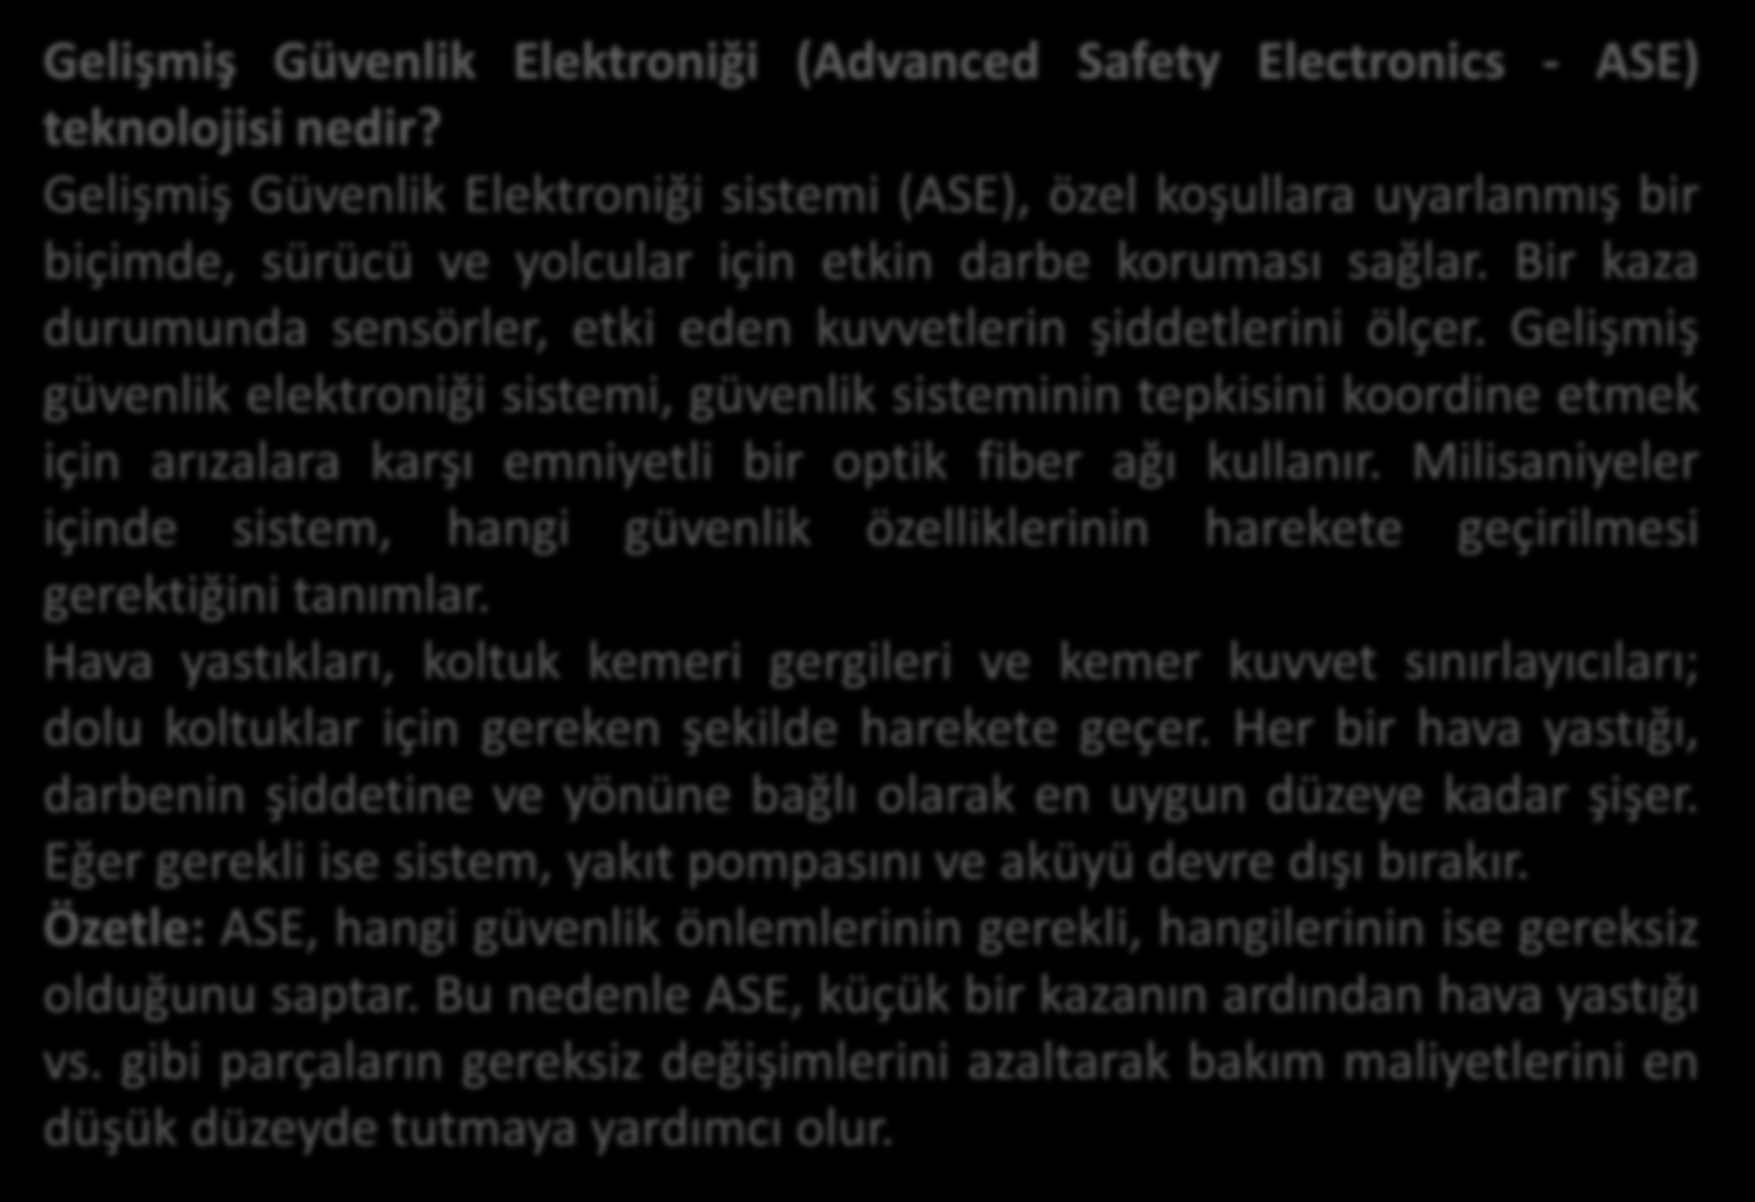 Gelişmiş Güvenlik Elektroniği (Advanced Safety Electronics - ASE) teknolojisi nedir?